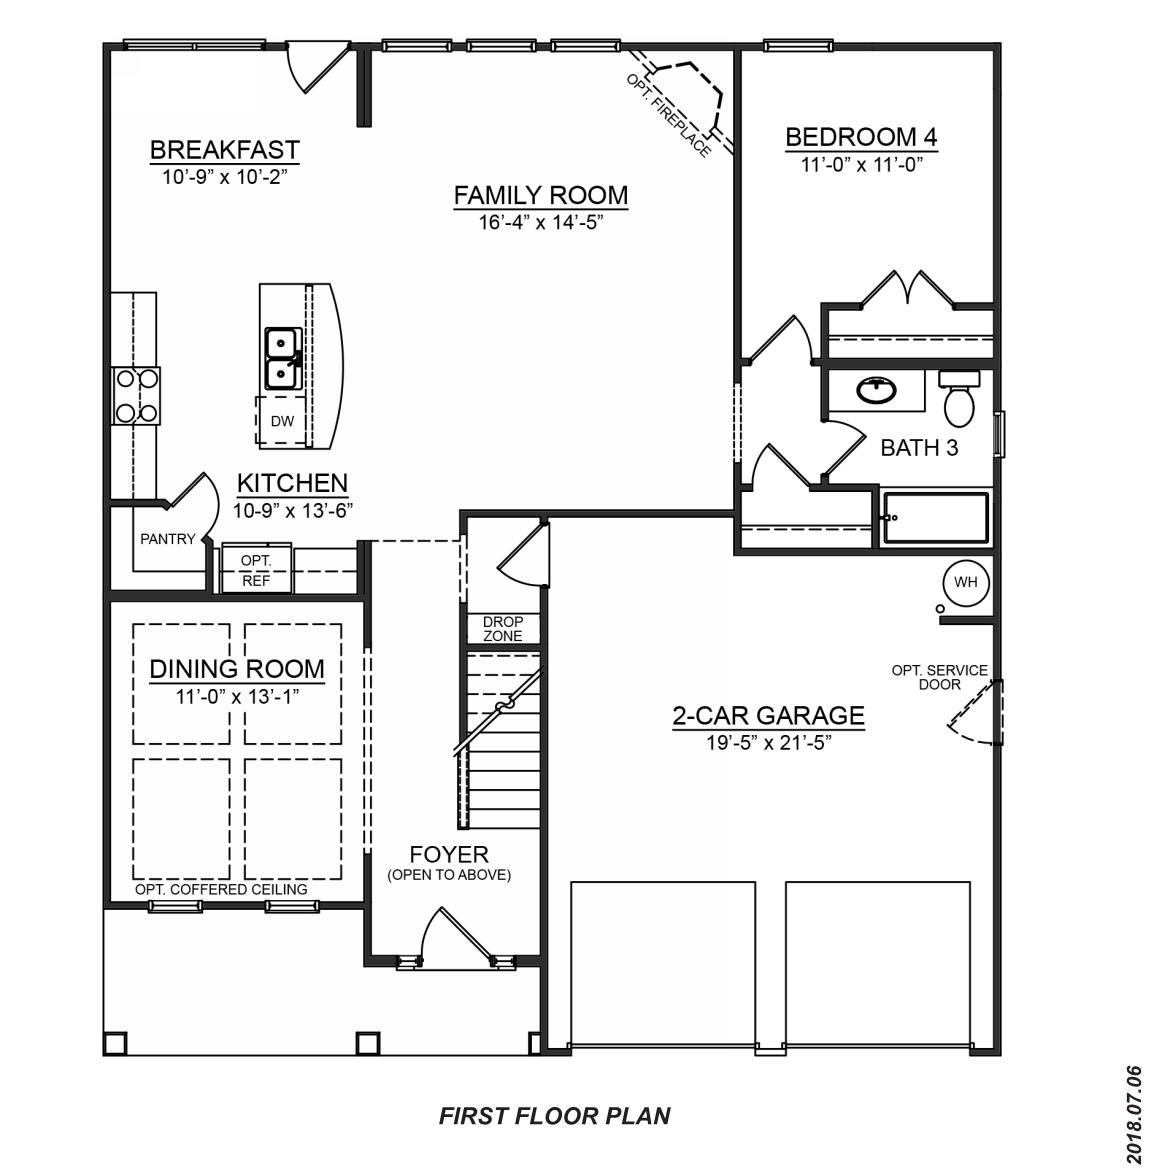 Dr Horton 5 Bedroom Floor Plans - mangaziez